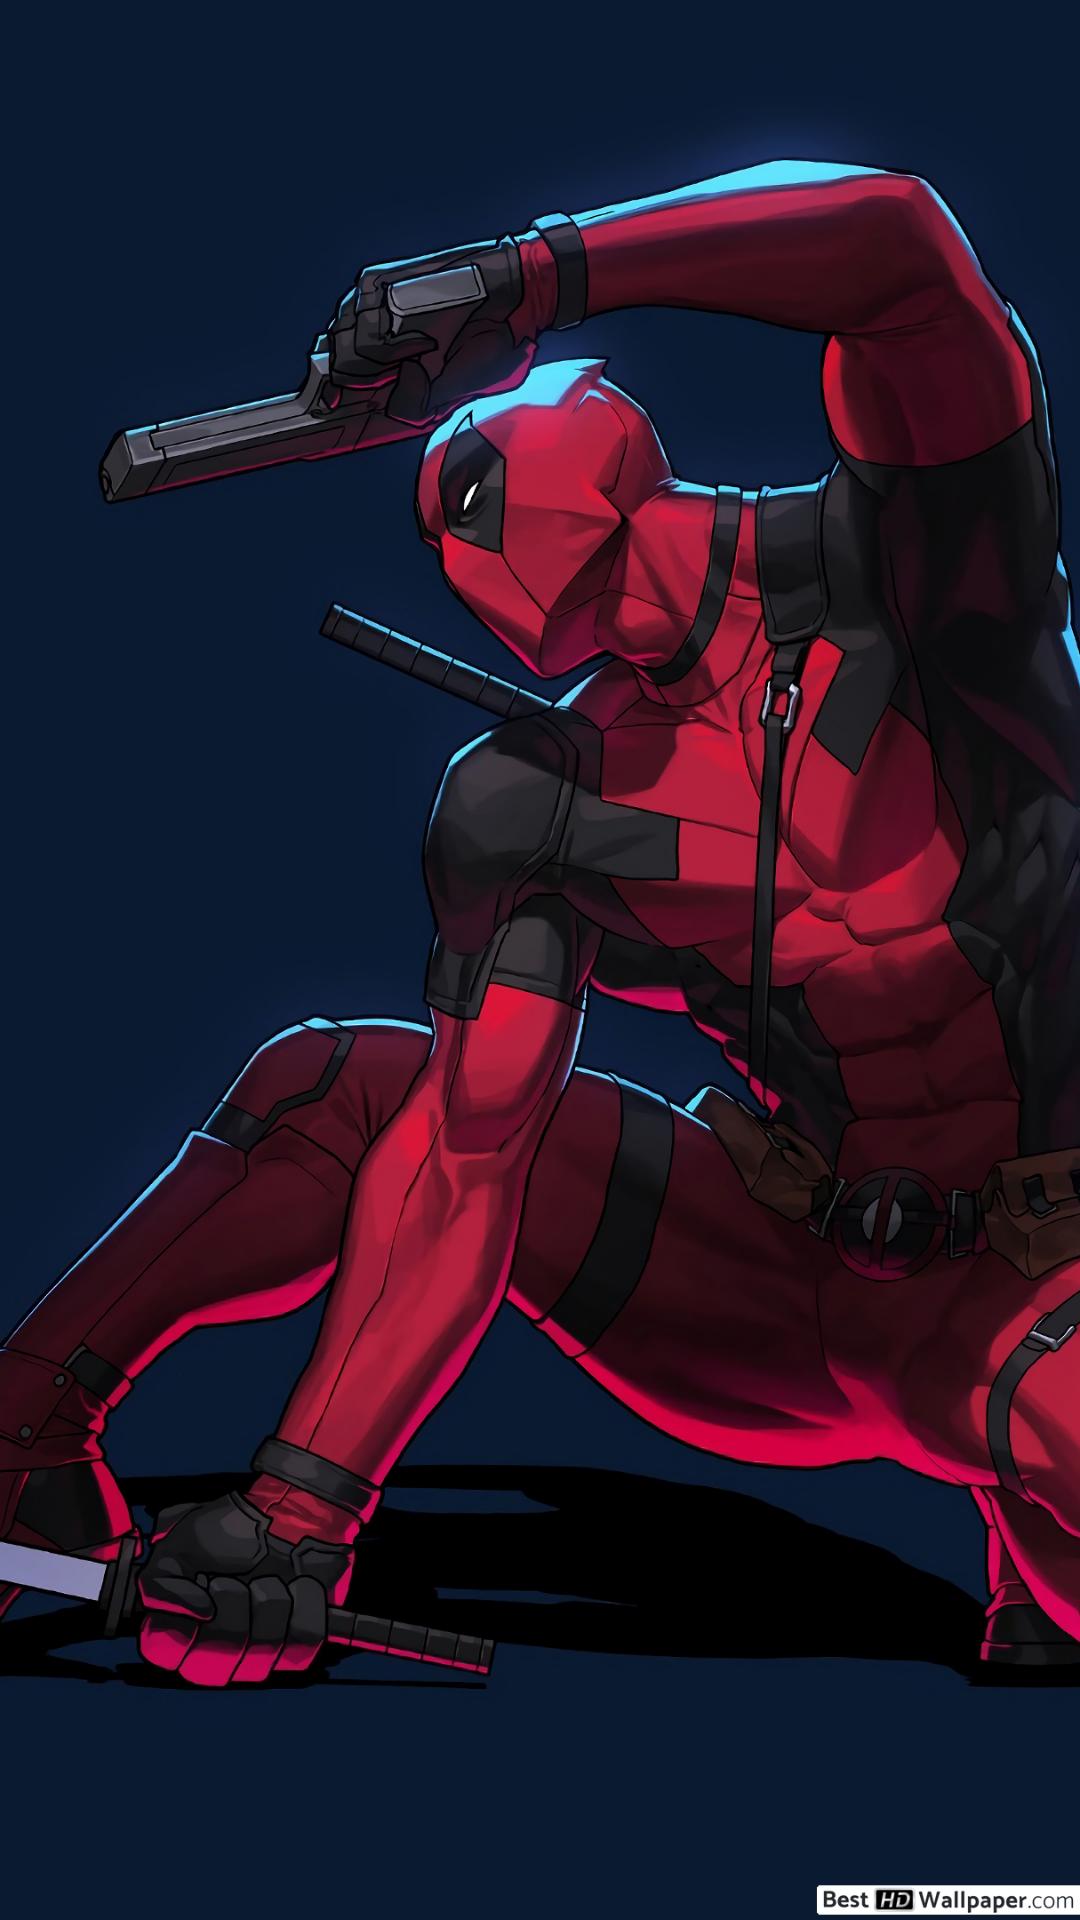 Deadpool Fan Art Anime - 1080x1920 Wallpaper 